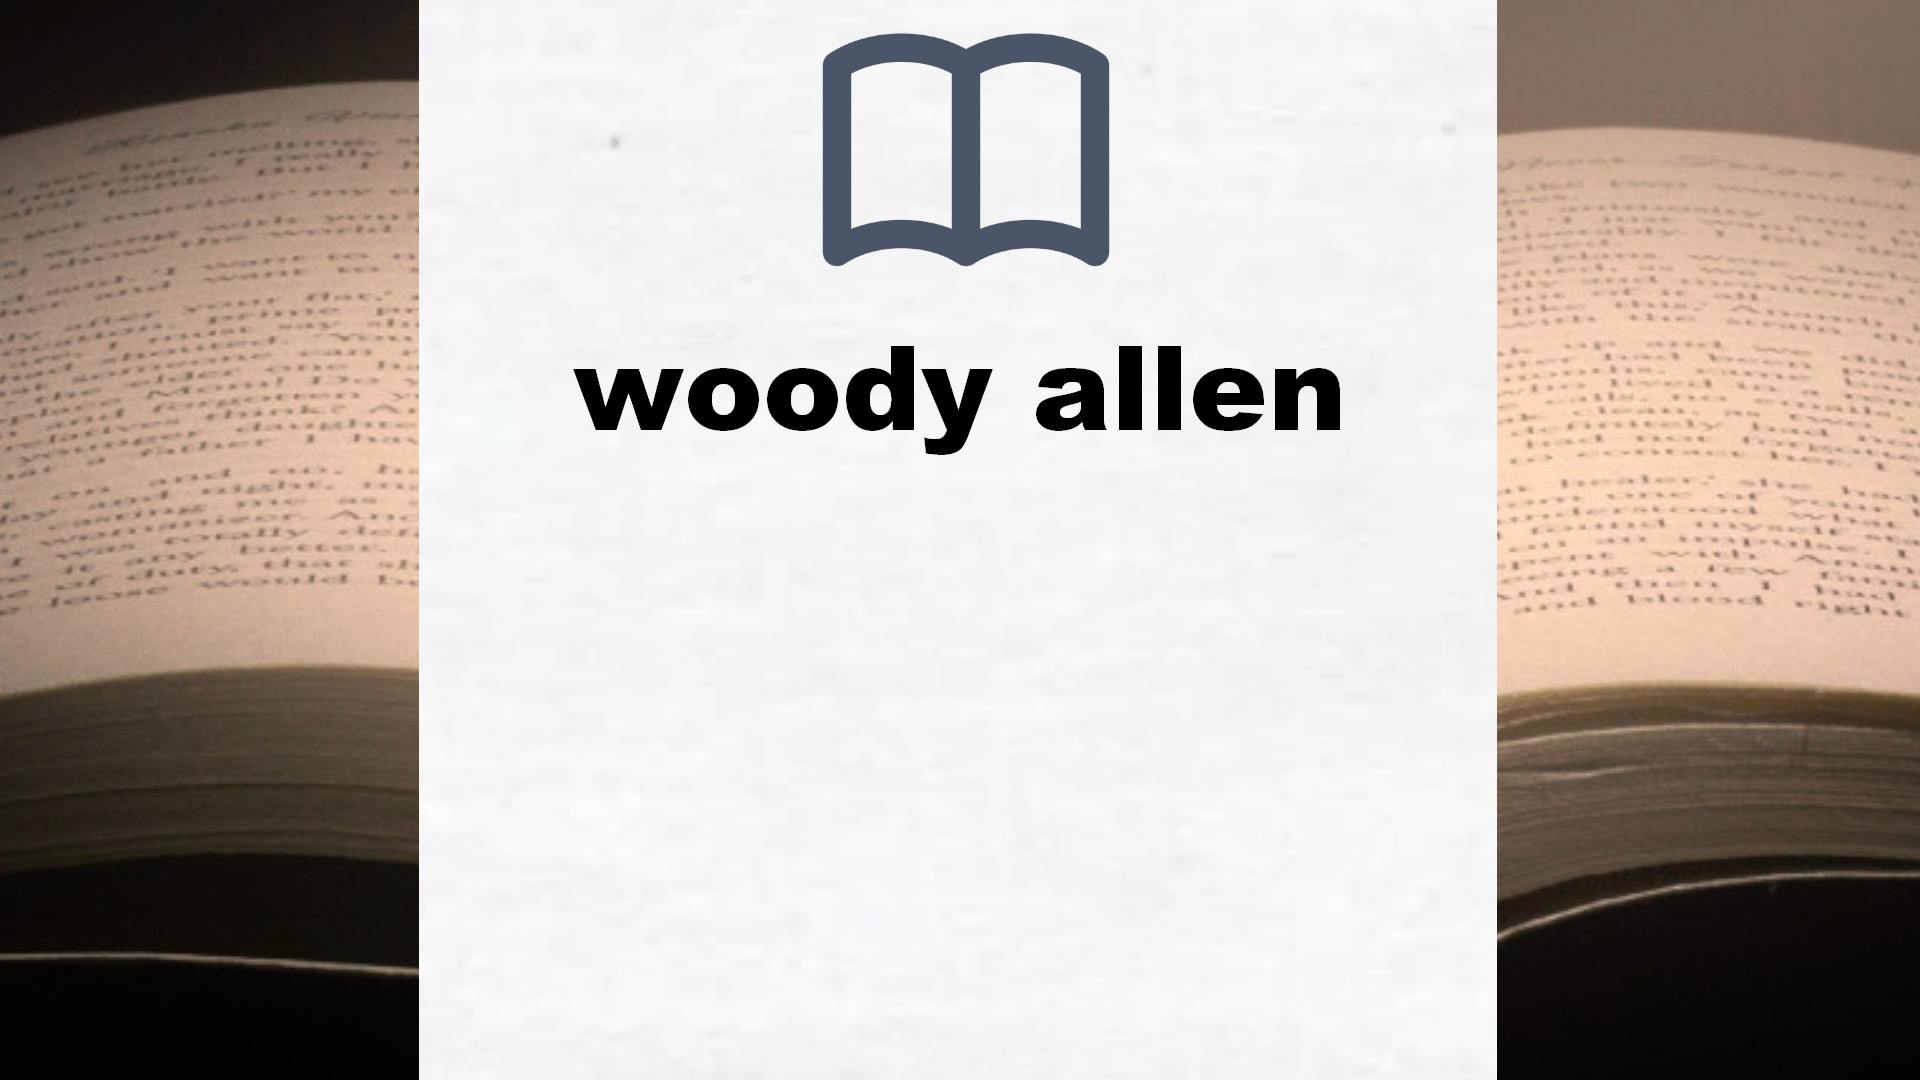 Libros sobre woody allen